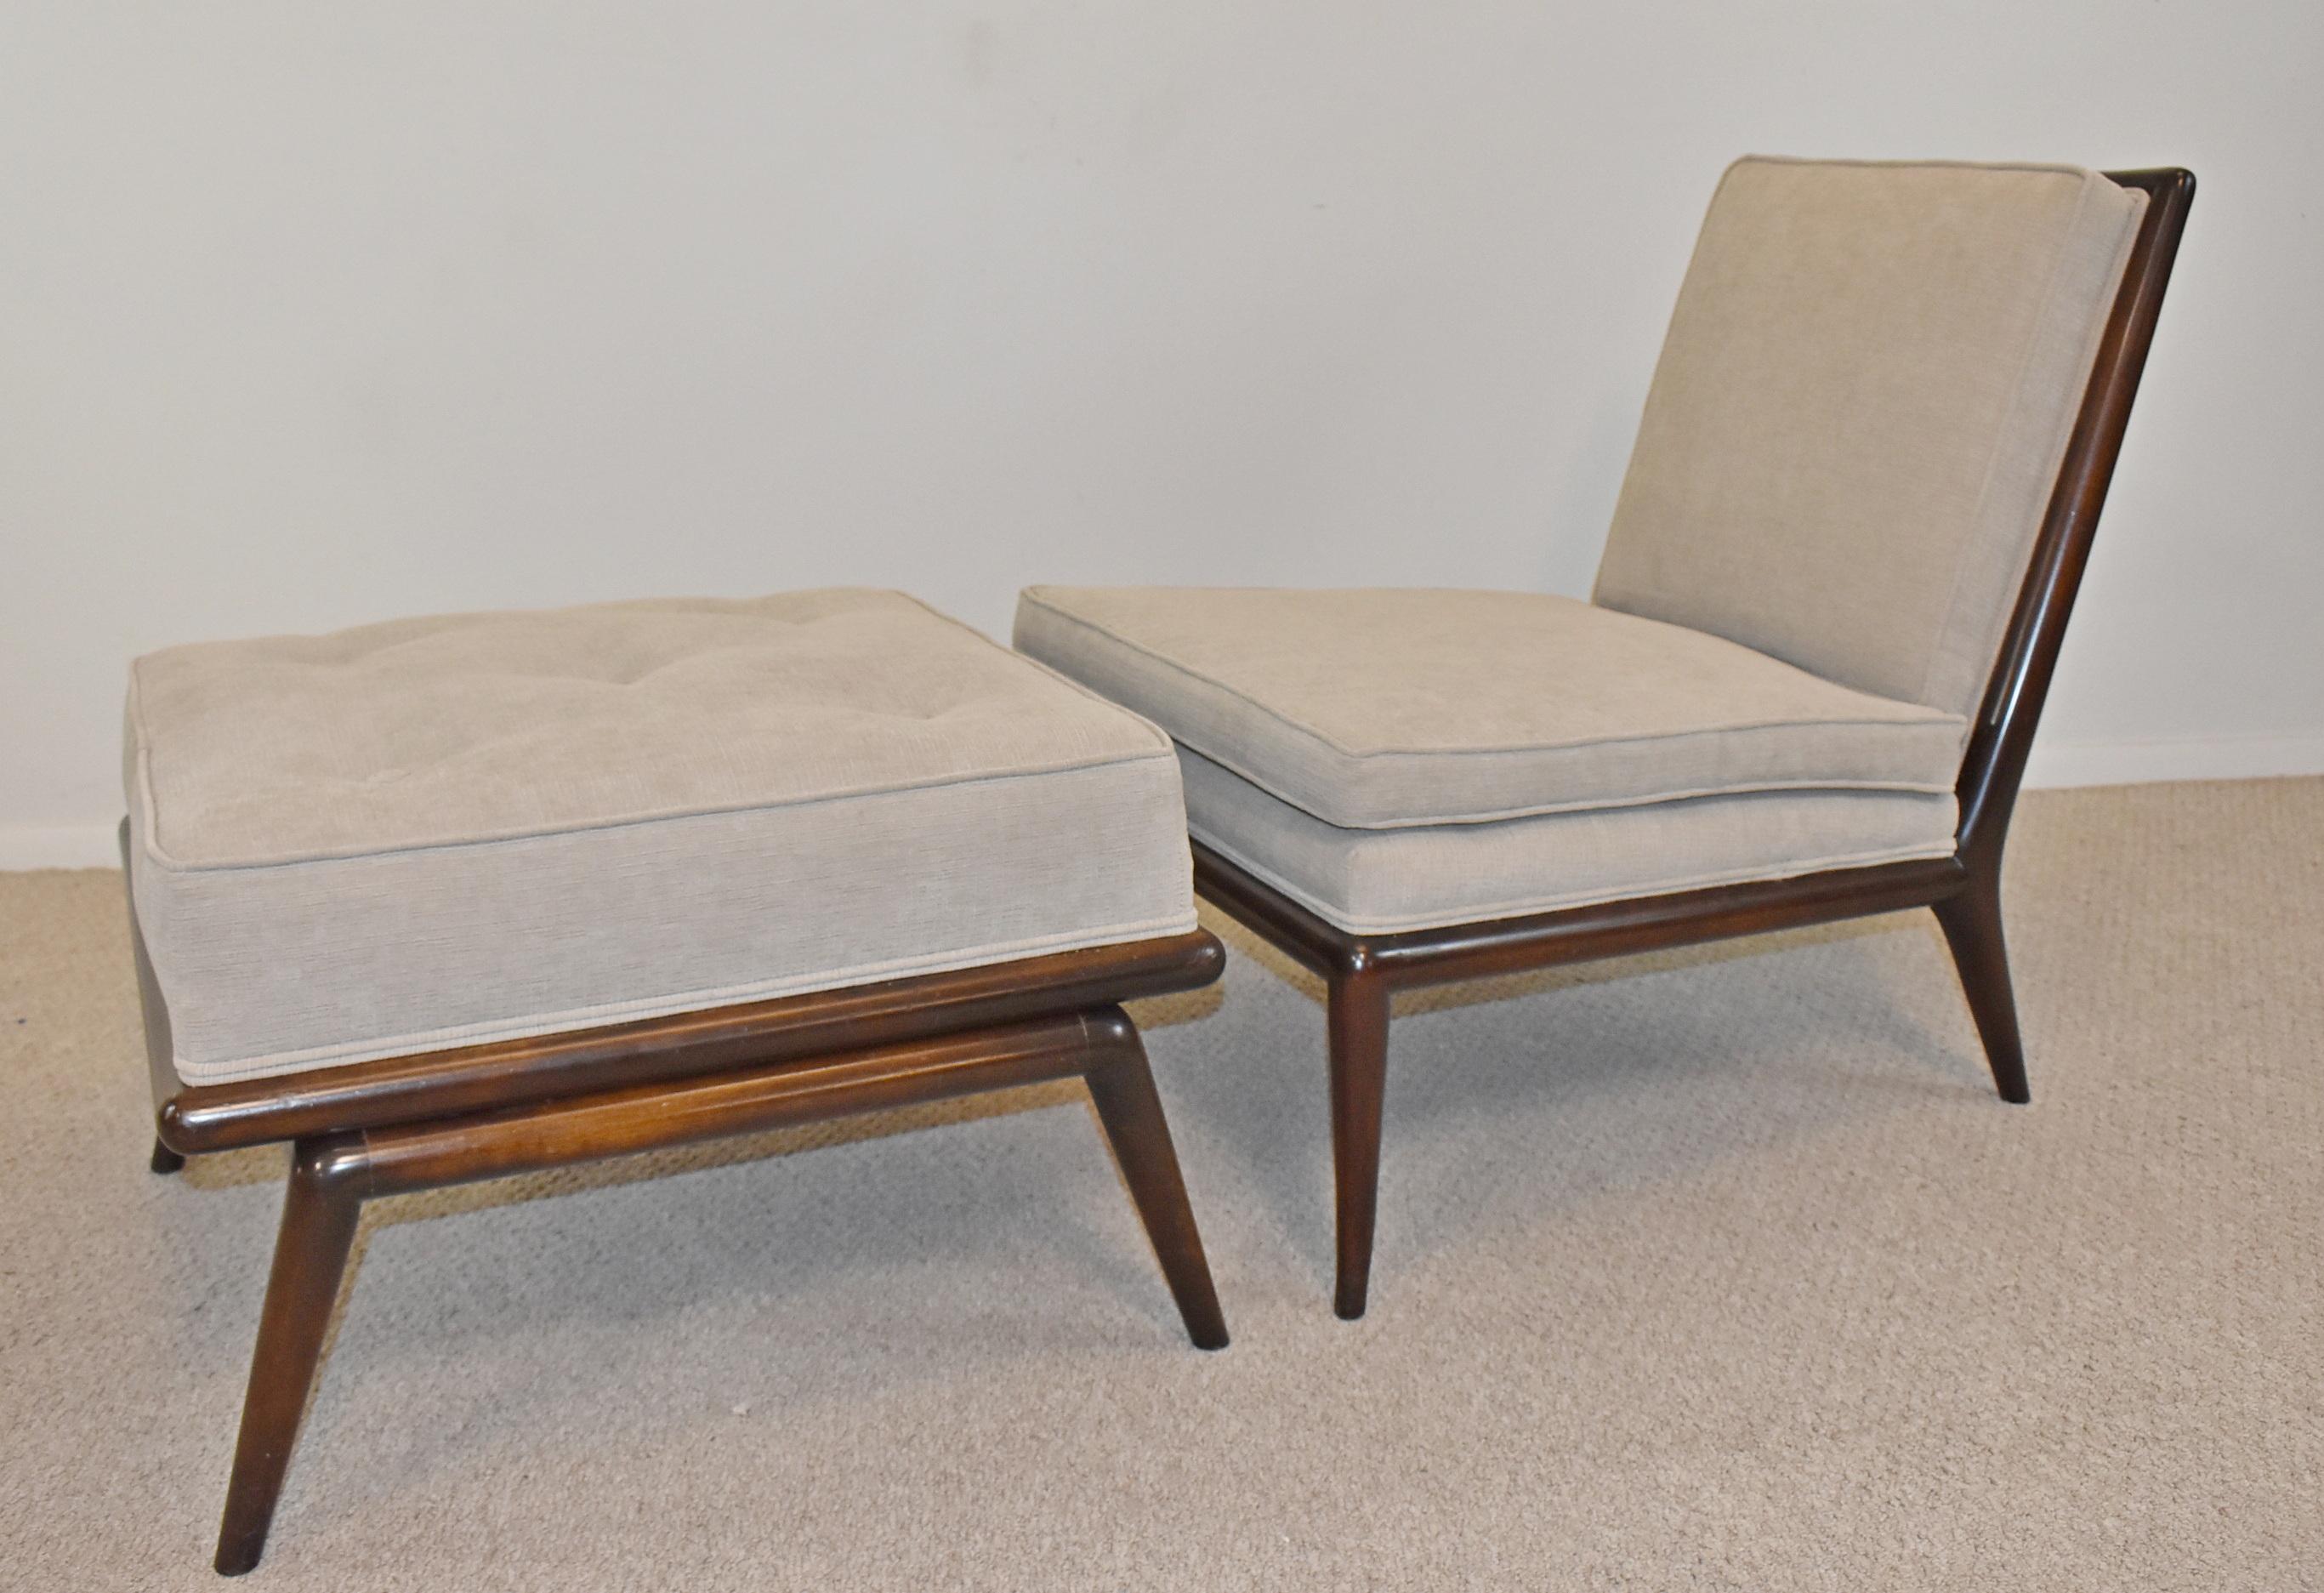 T.H. Robsjohn-Gibbings Stuhl und Ottomane für Widdicomb Furniture. T.H. Robsjohn-Gibbings (1905-1976) produzierte von 1943 bis 1956 eine Reihe modernistischer Möbel für Widdicomb und sorgte für deren Understatement. Mid-Century Modern neu erholt